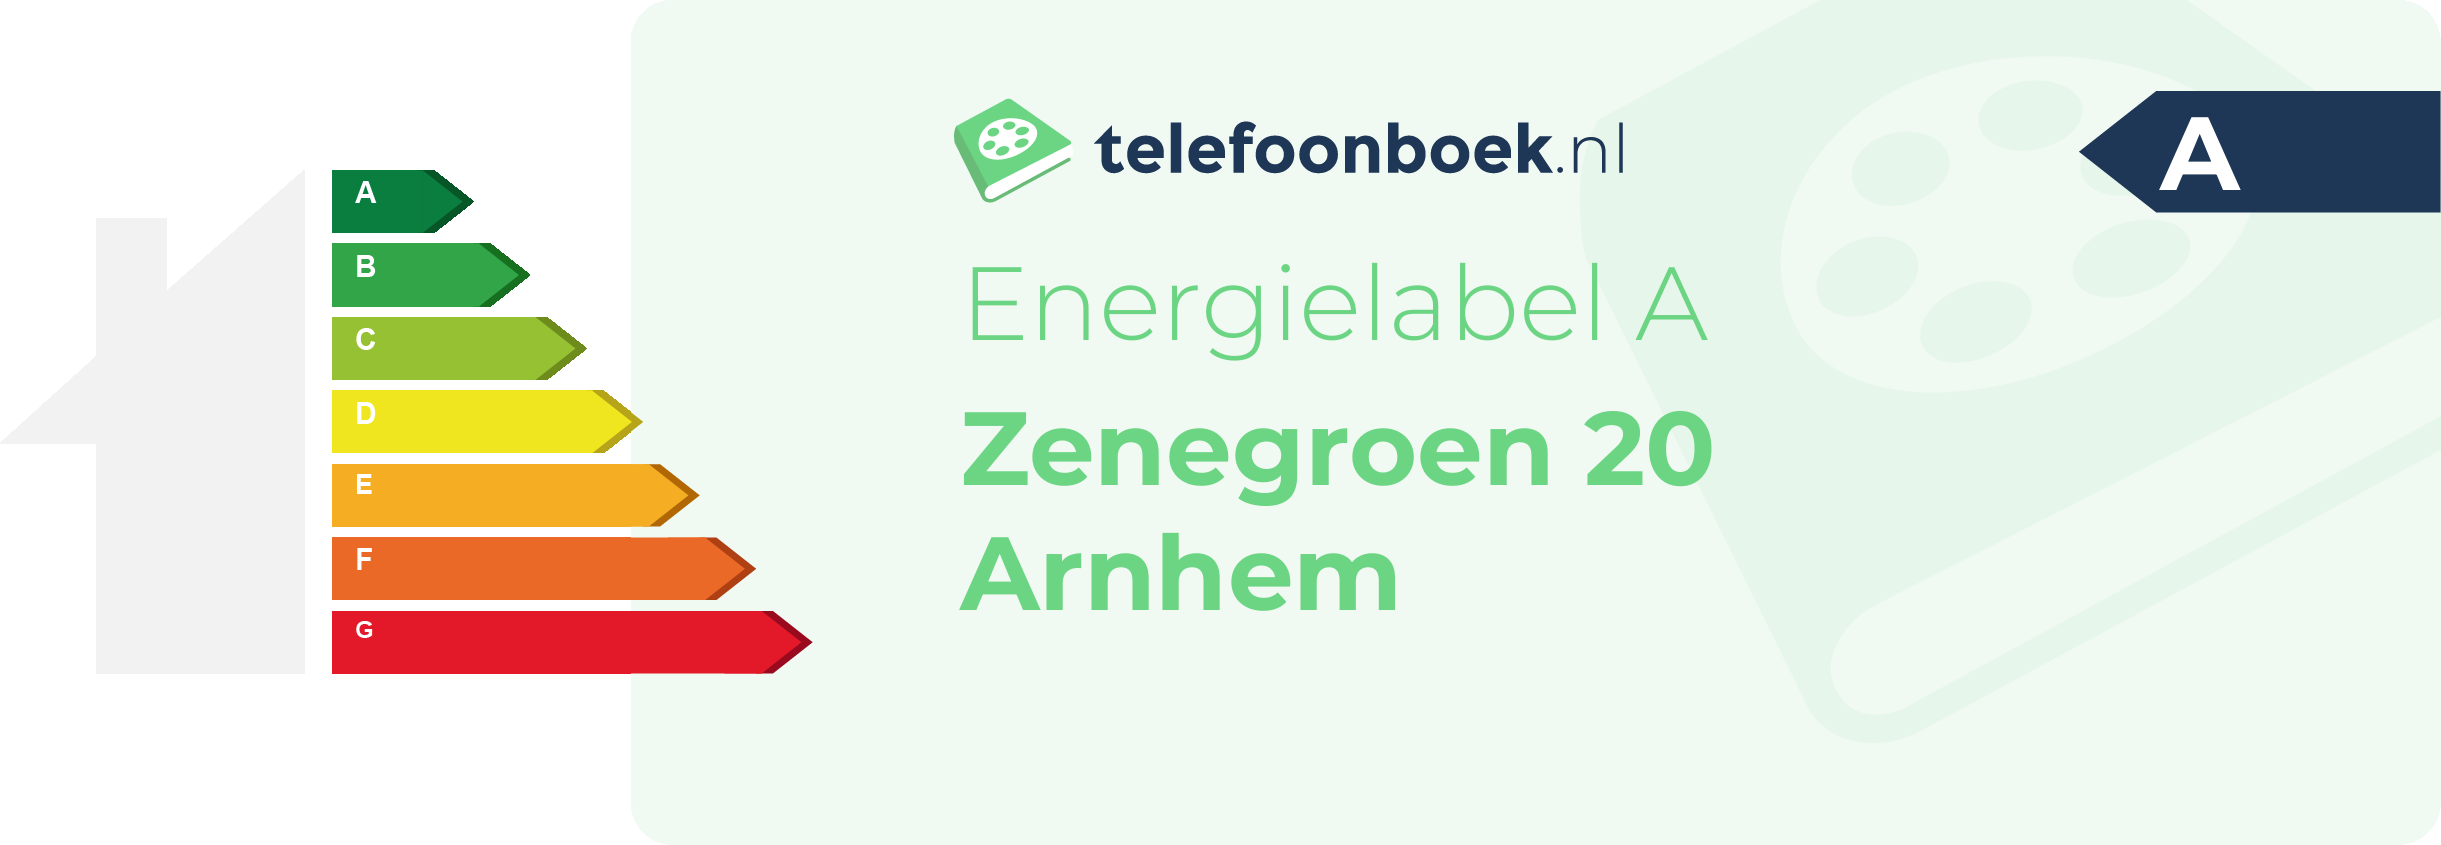 Energielabel Zenegroen 20 Arnhem